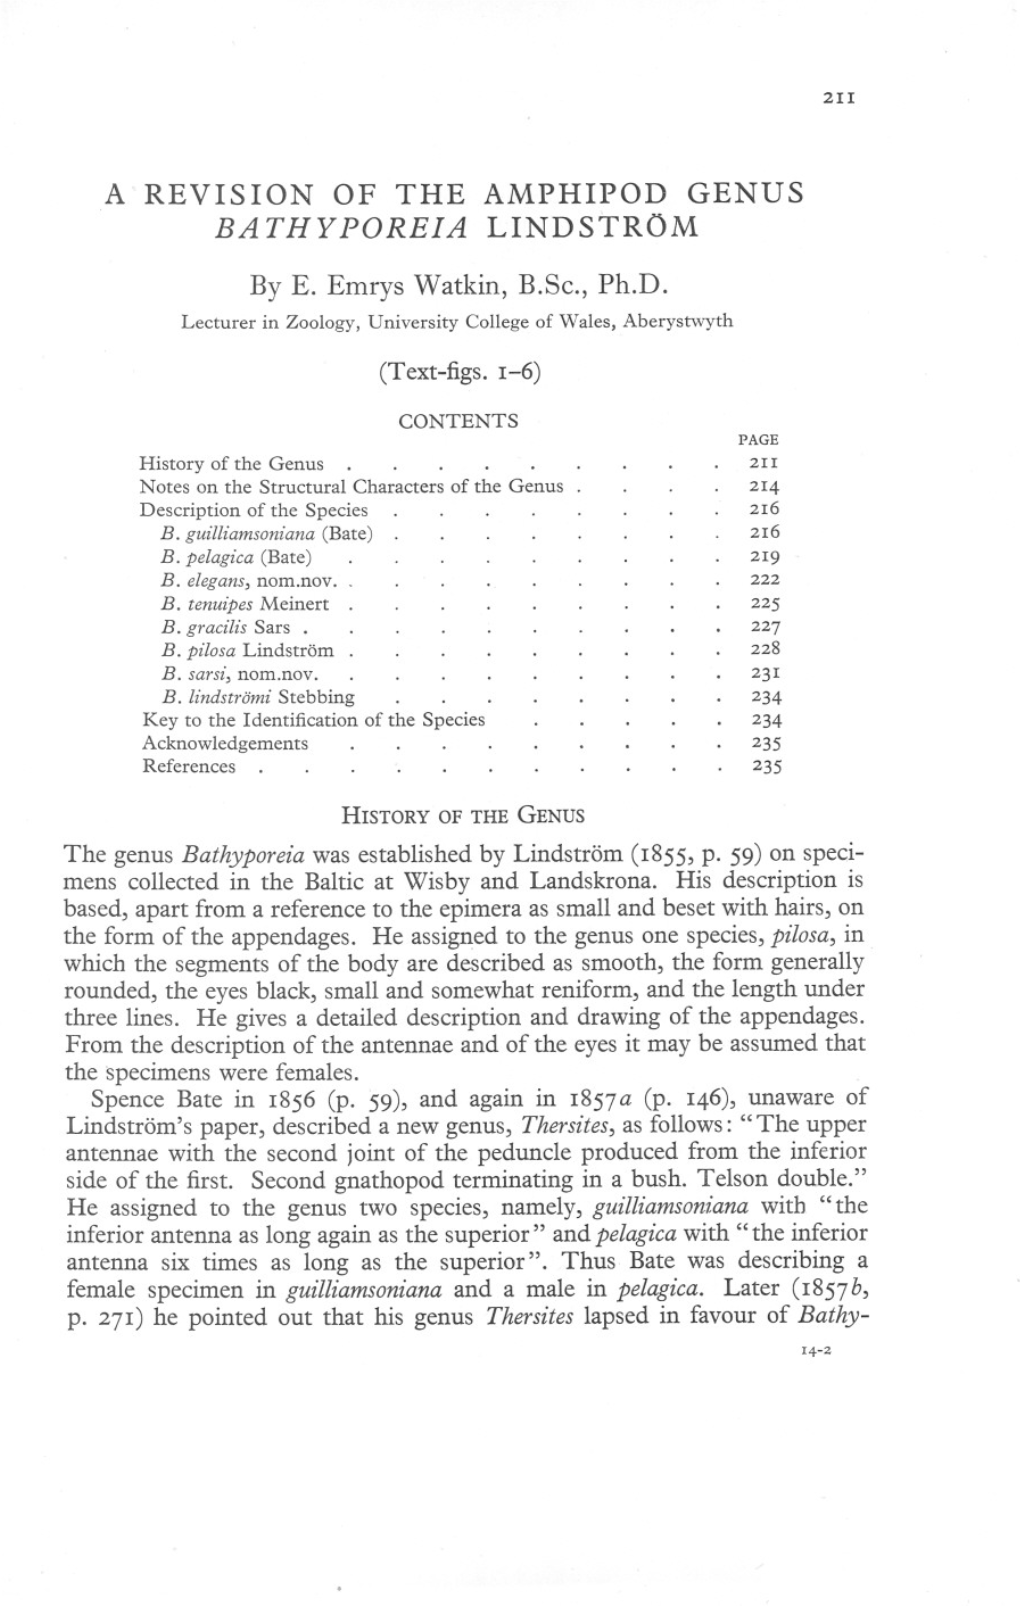 A REVISION of the AMPHIPOD GENUS BATHYPOREIA LINDSTROM by E